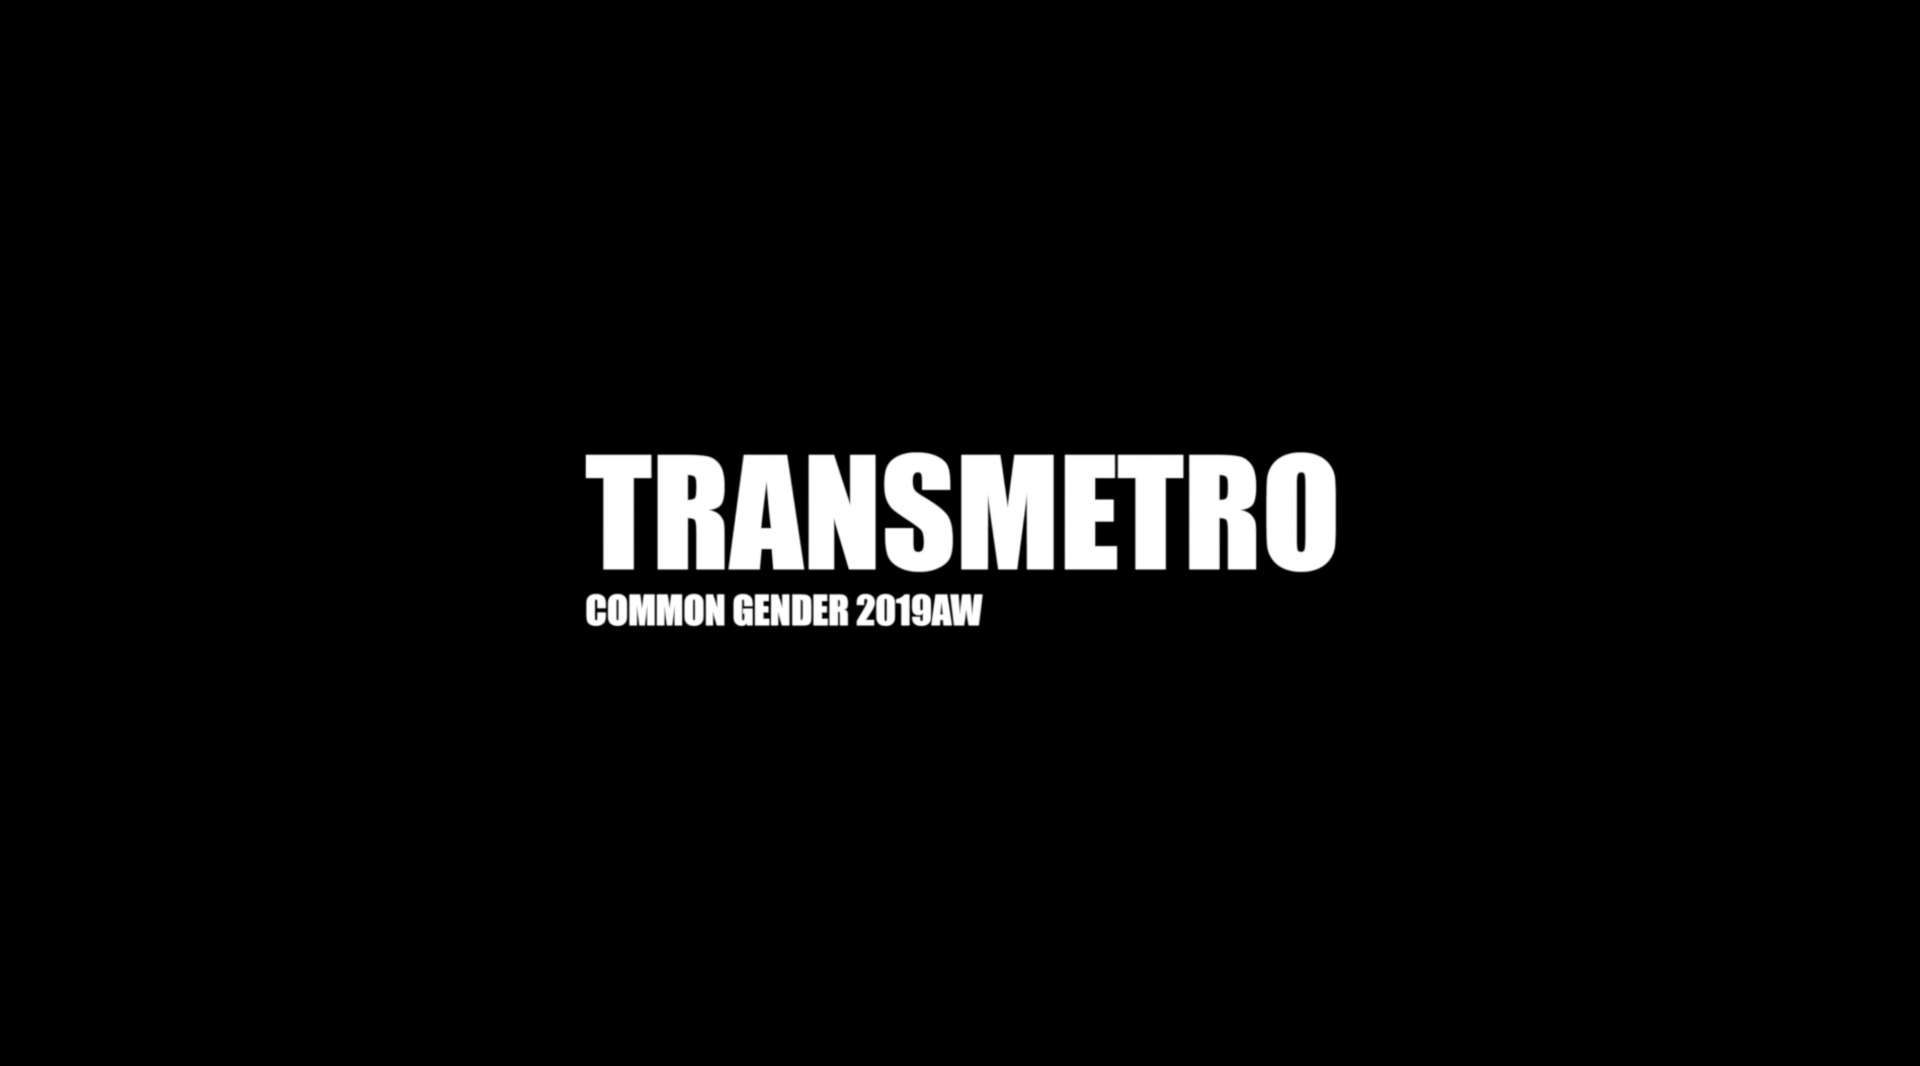 TRANSMETRO | COMMON GENDER 2019AW